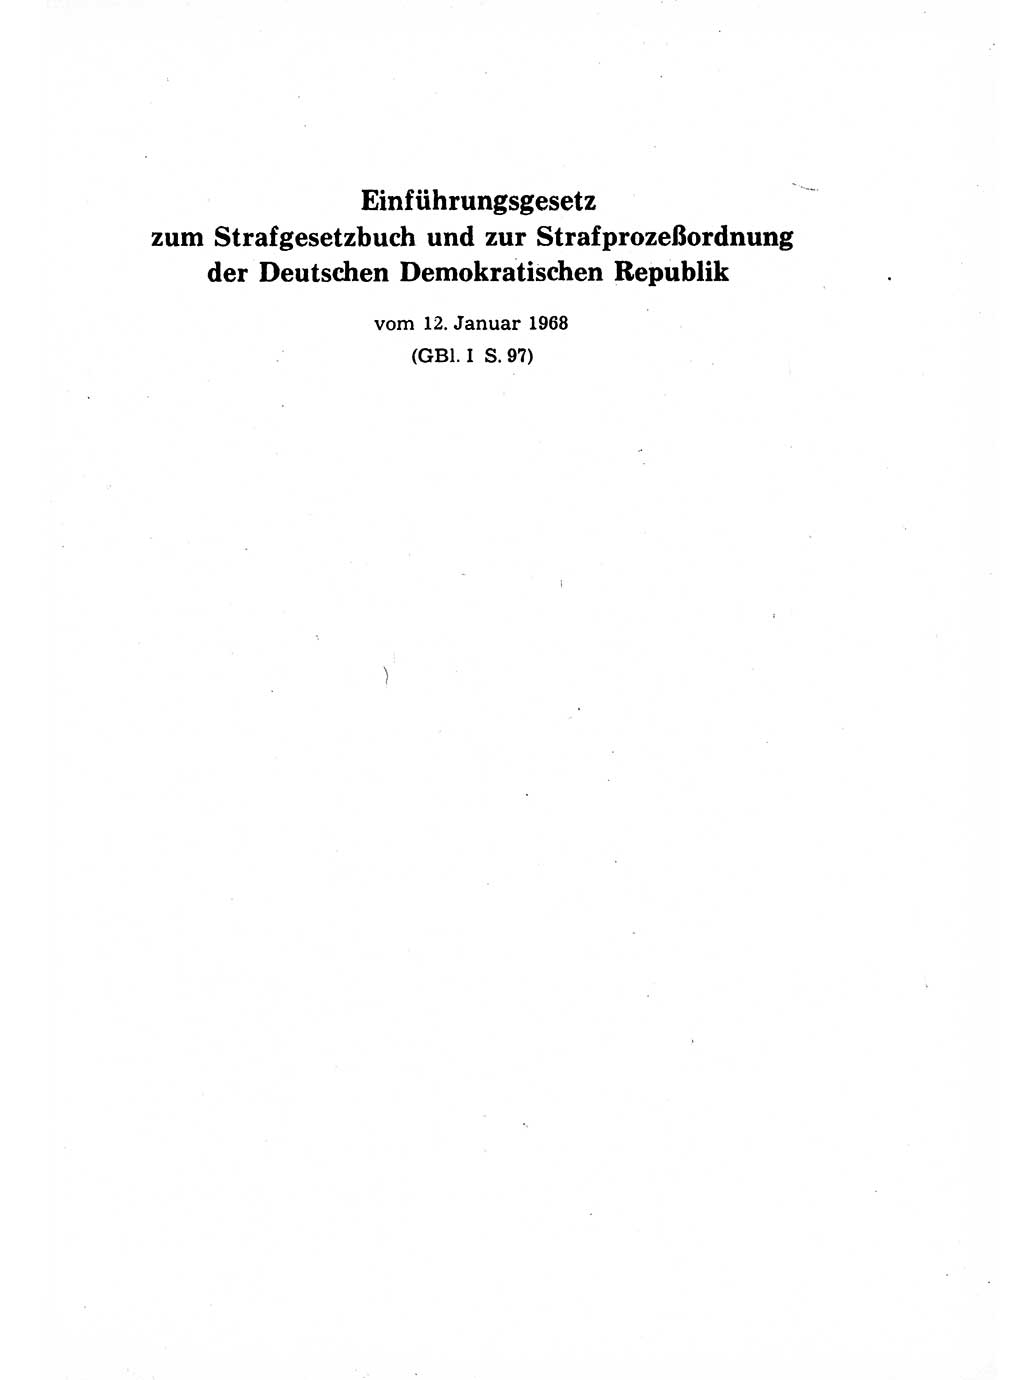 Strafrecht der Deutschen Demokratischen Republik (DDR), Lehrkommentar zum Strafgesetzbuch (StGB), Allgemeiner Teil 1969, Seite 283 (Strafr. DDR Lehrkomm. StGB AT 1969, S. 283)